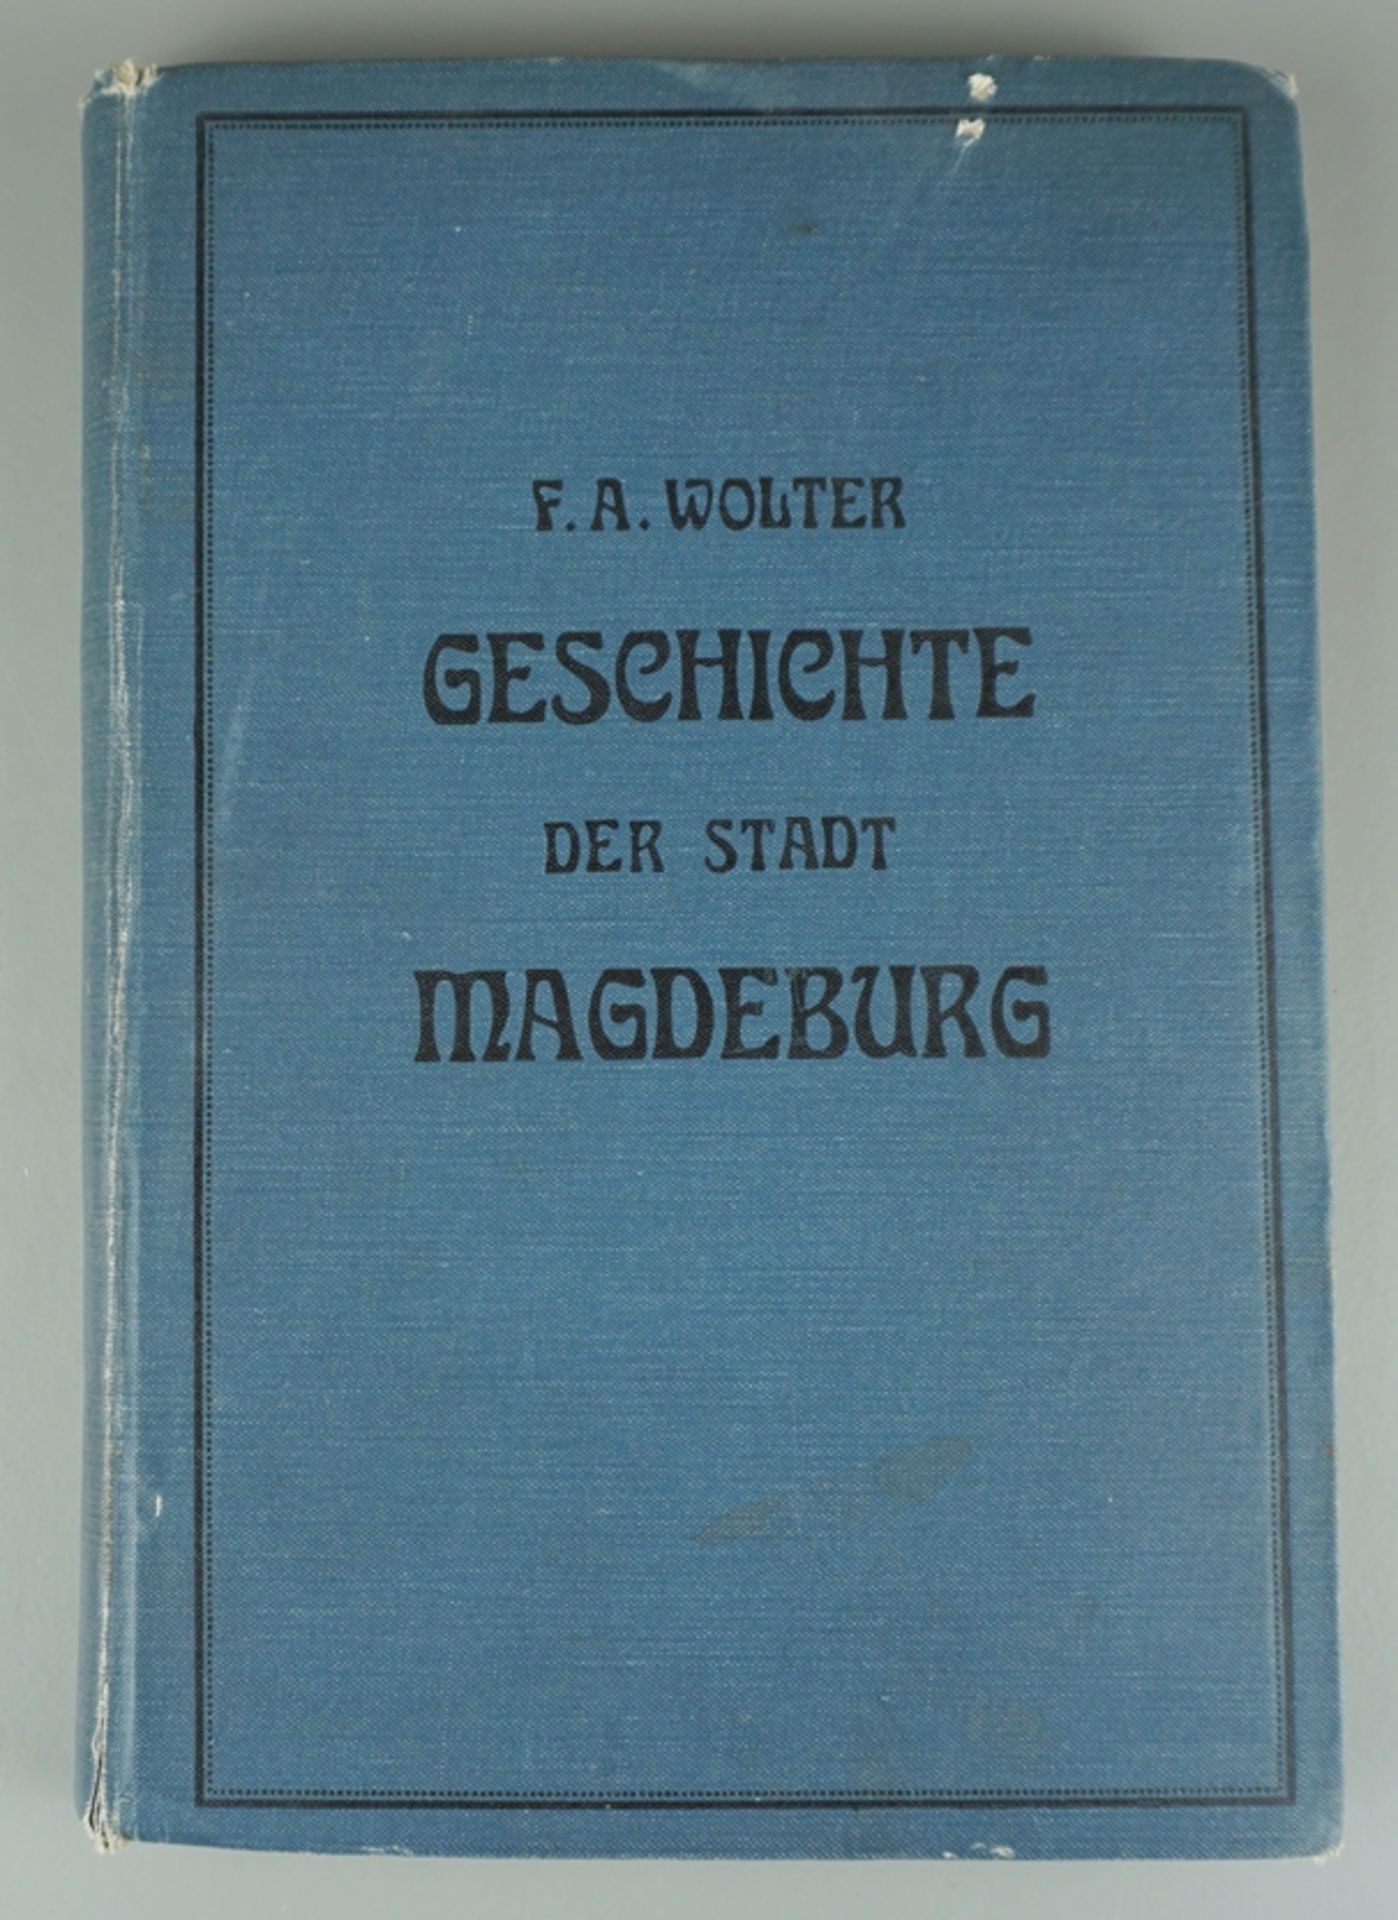 Geschichte der Stadt Magdeburg von ihrem Ursprung bis auf die Gegenwart, von F.A.Wolter, 1901